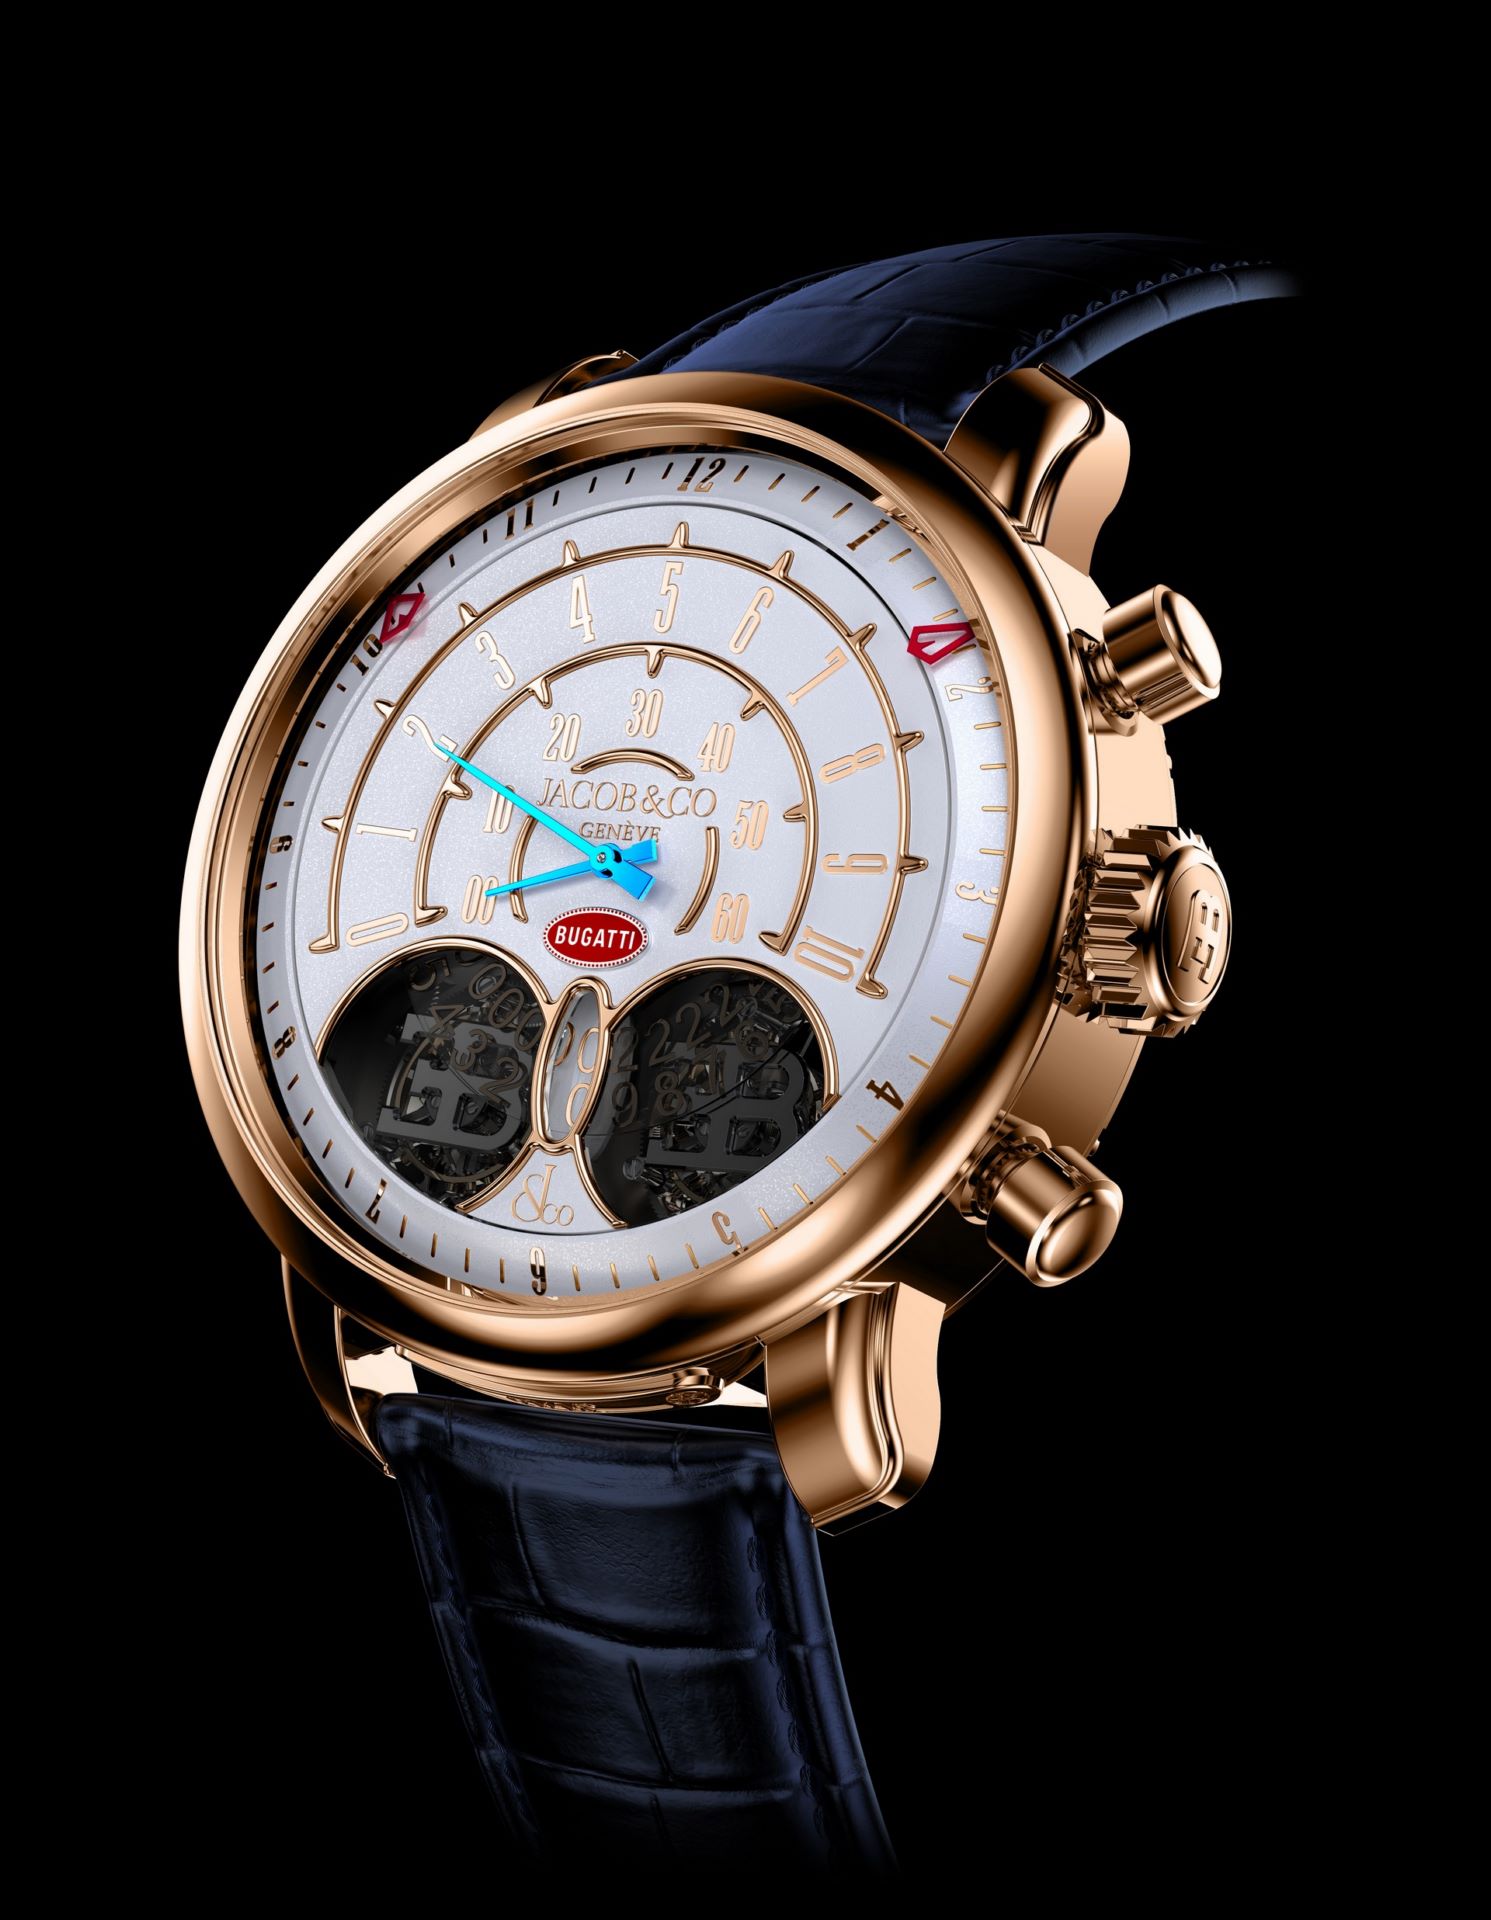 Jacob-Co-Jean-Bugatti-watch-1